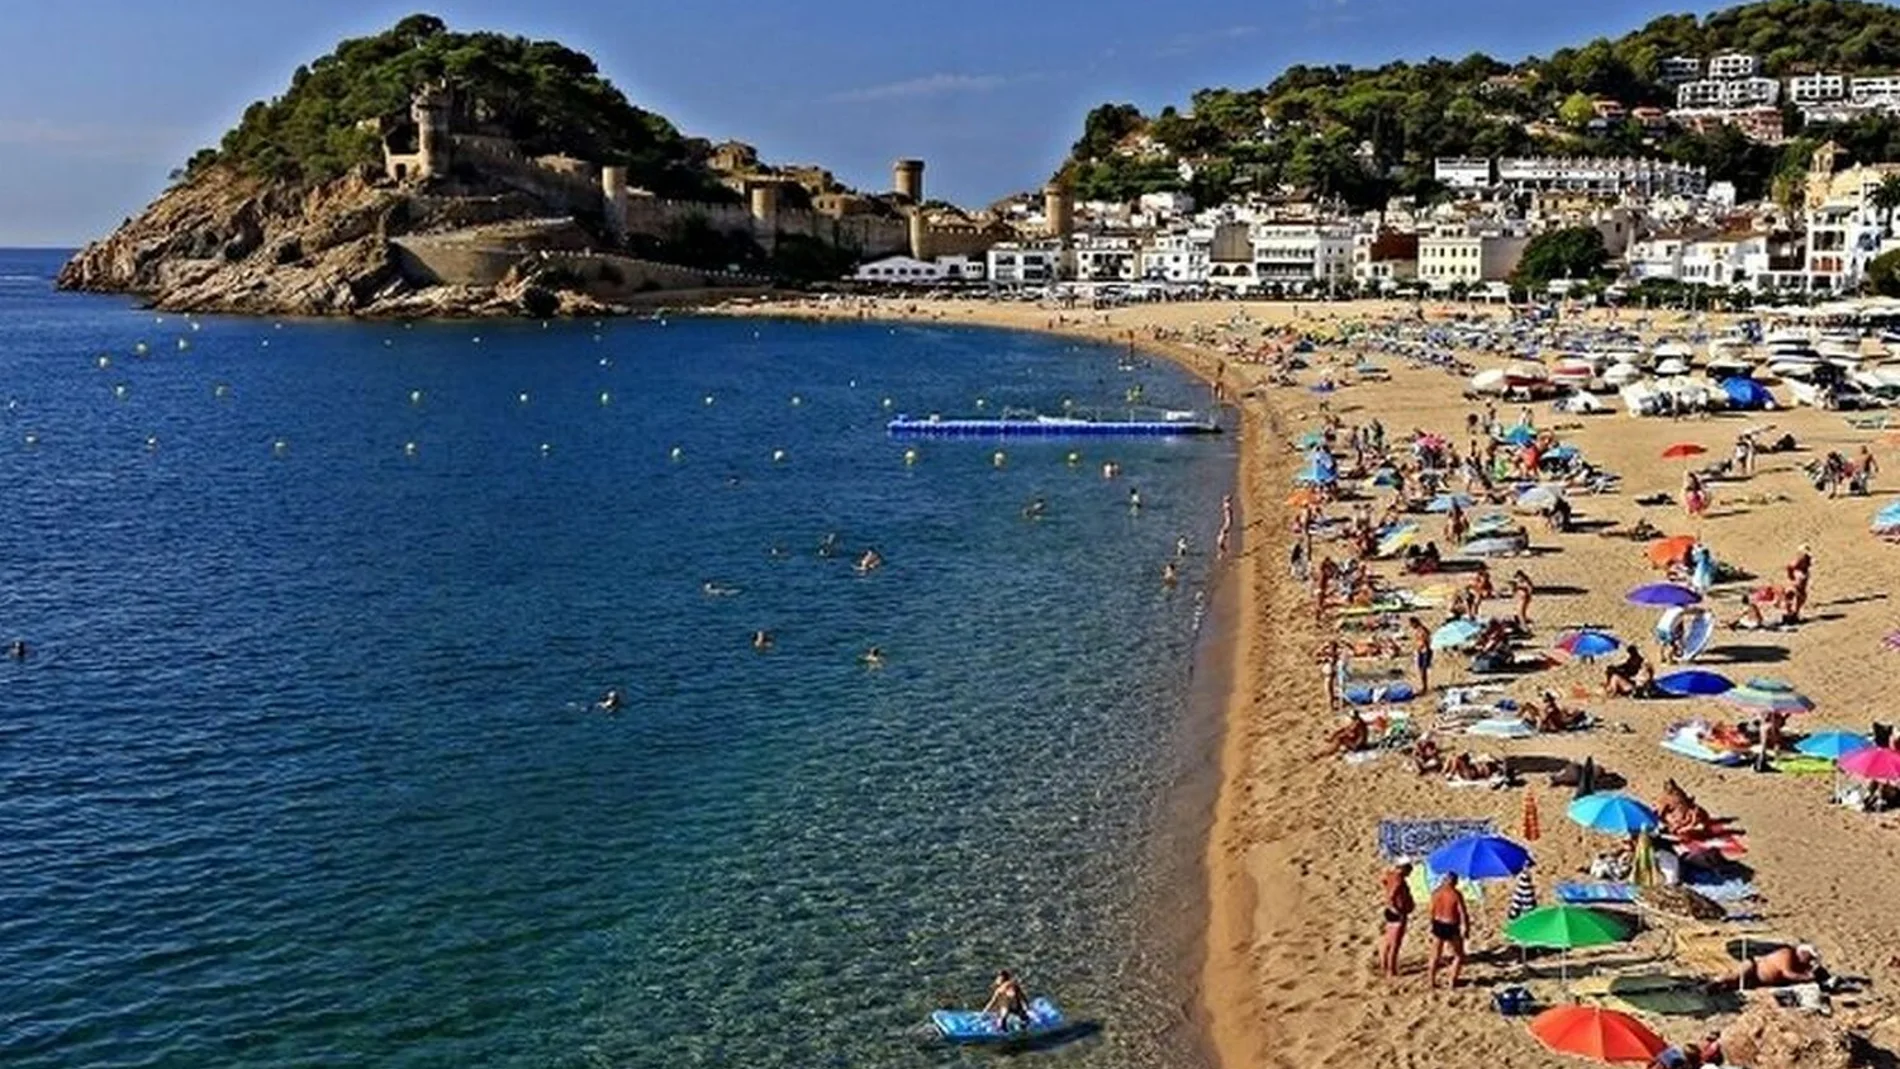 En la imagen, la playa de la población de Tossa de Mar